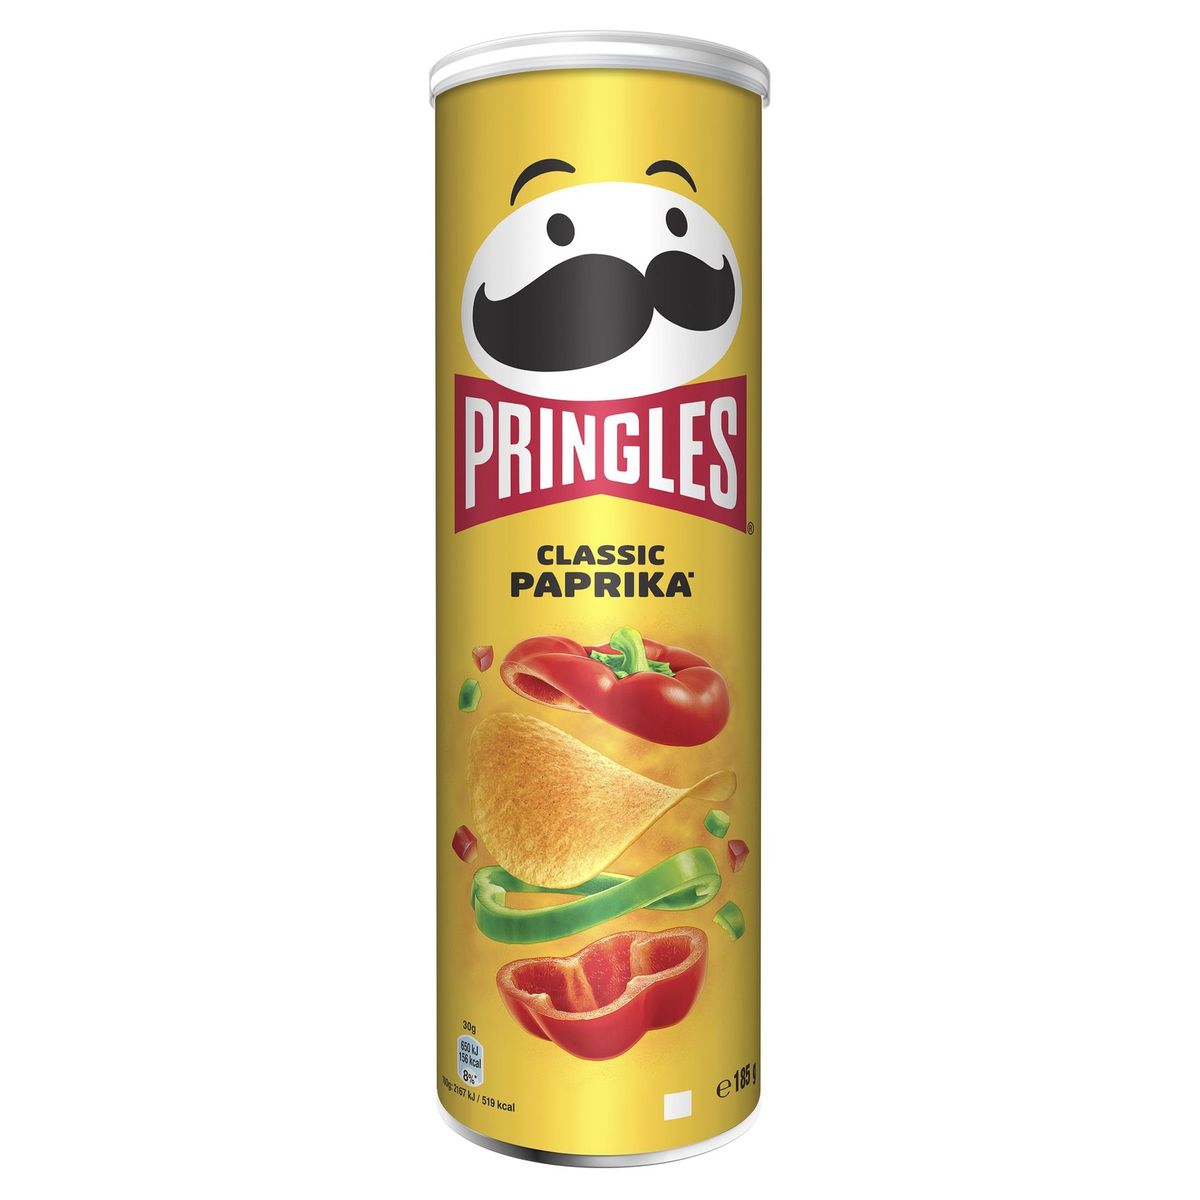 Pringles Chips Tuiles Classique Paprika 185 g